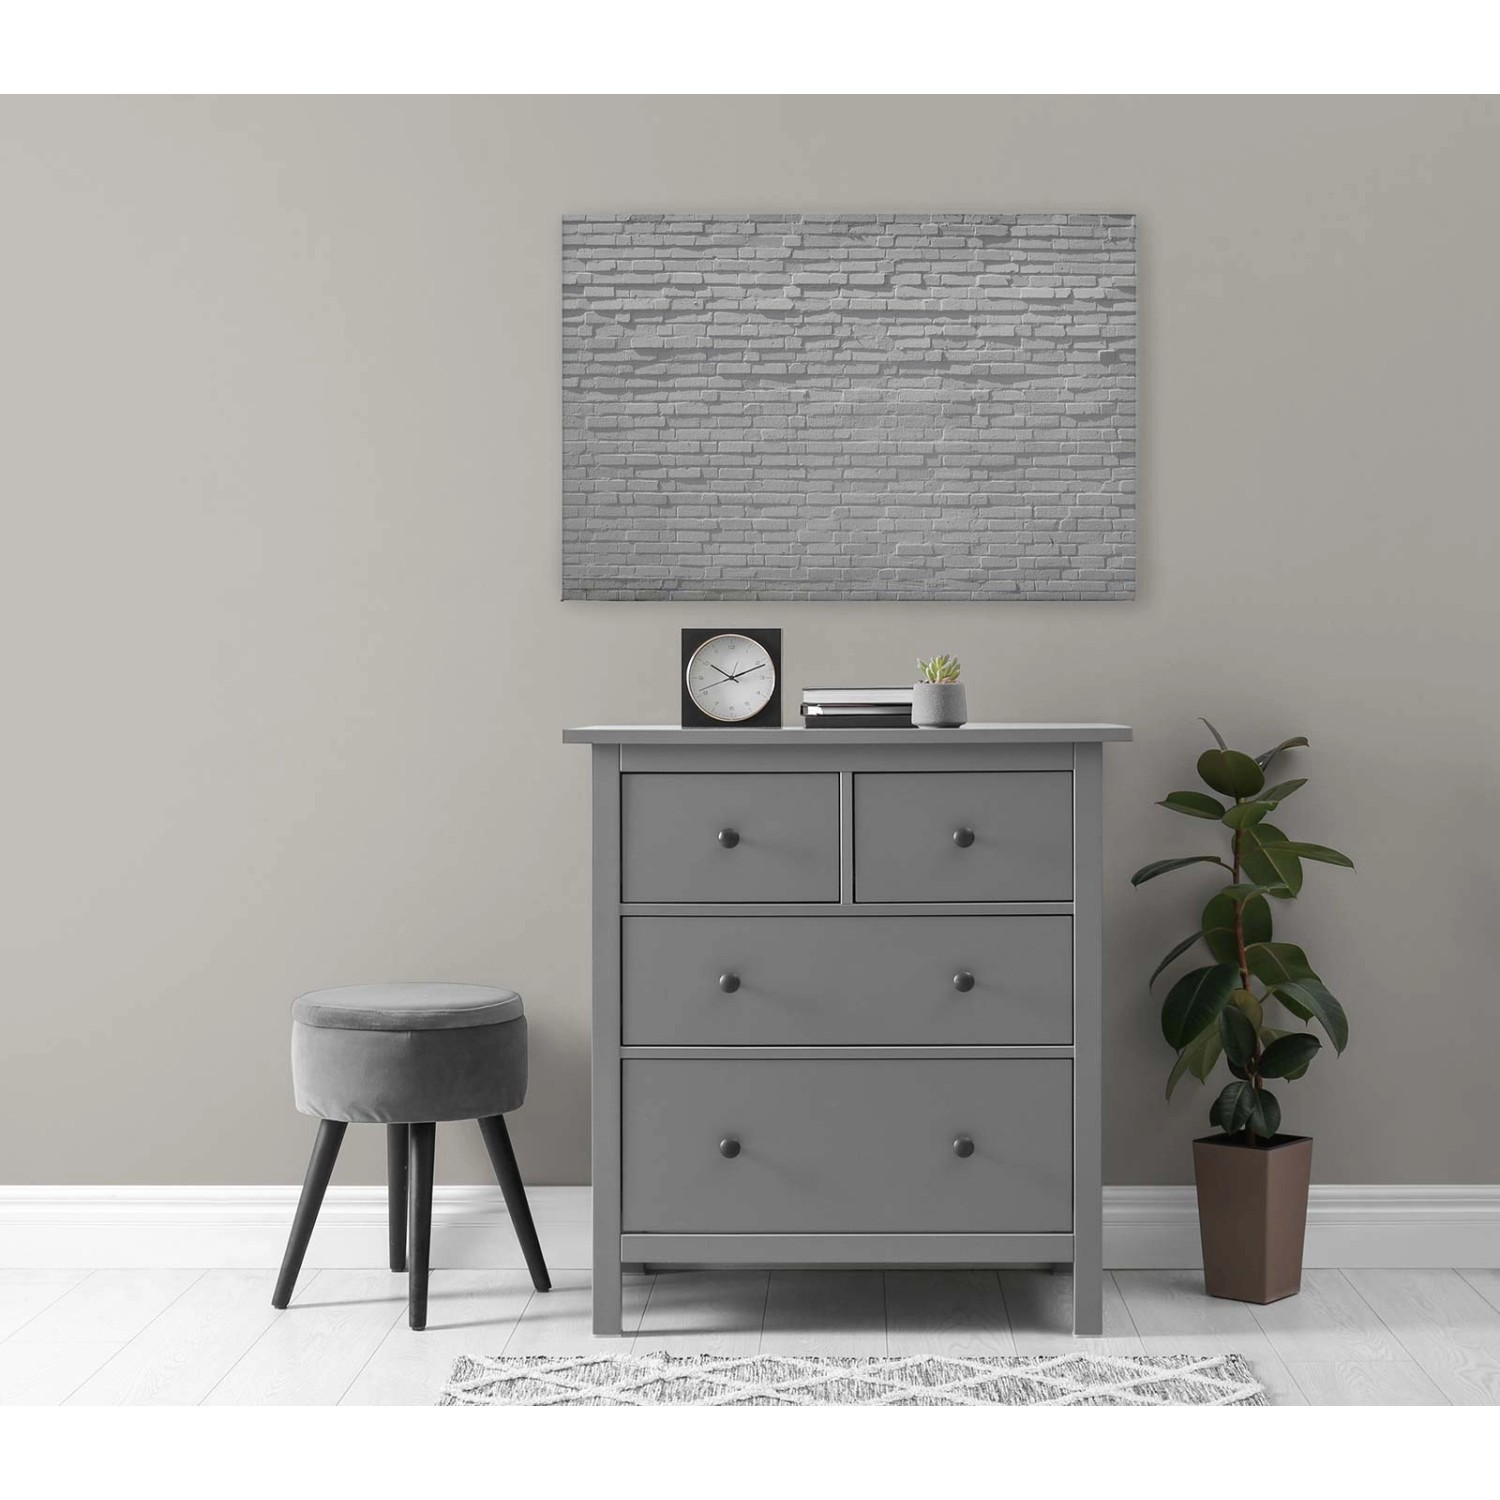 Bricoflor Mauer Bild 3D Effekt Weiß Modernes Wandbild In Steinoptik Ideal Für Küche Und Bad Leinwandbild Steine In 120 X